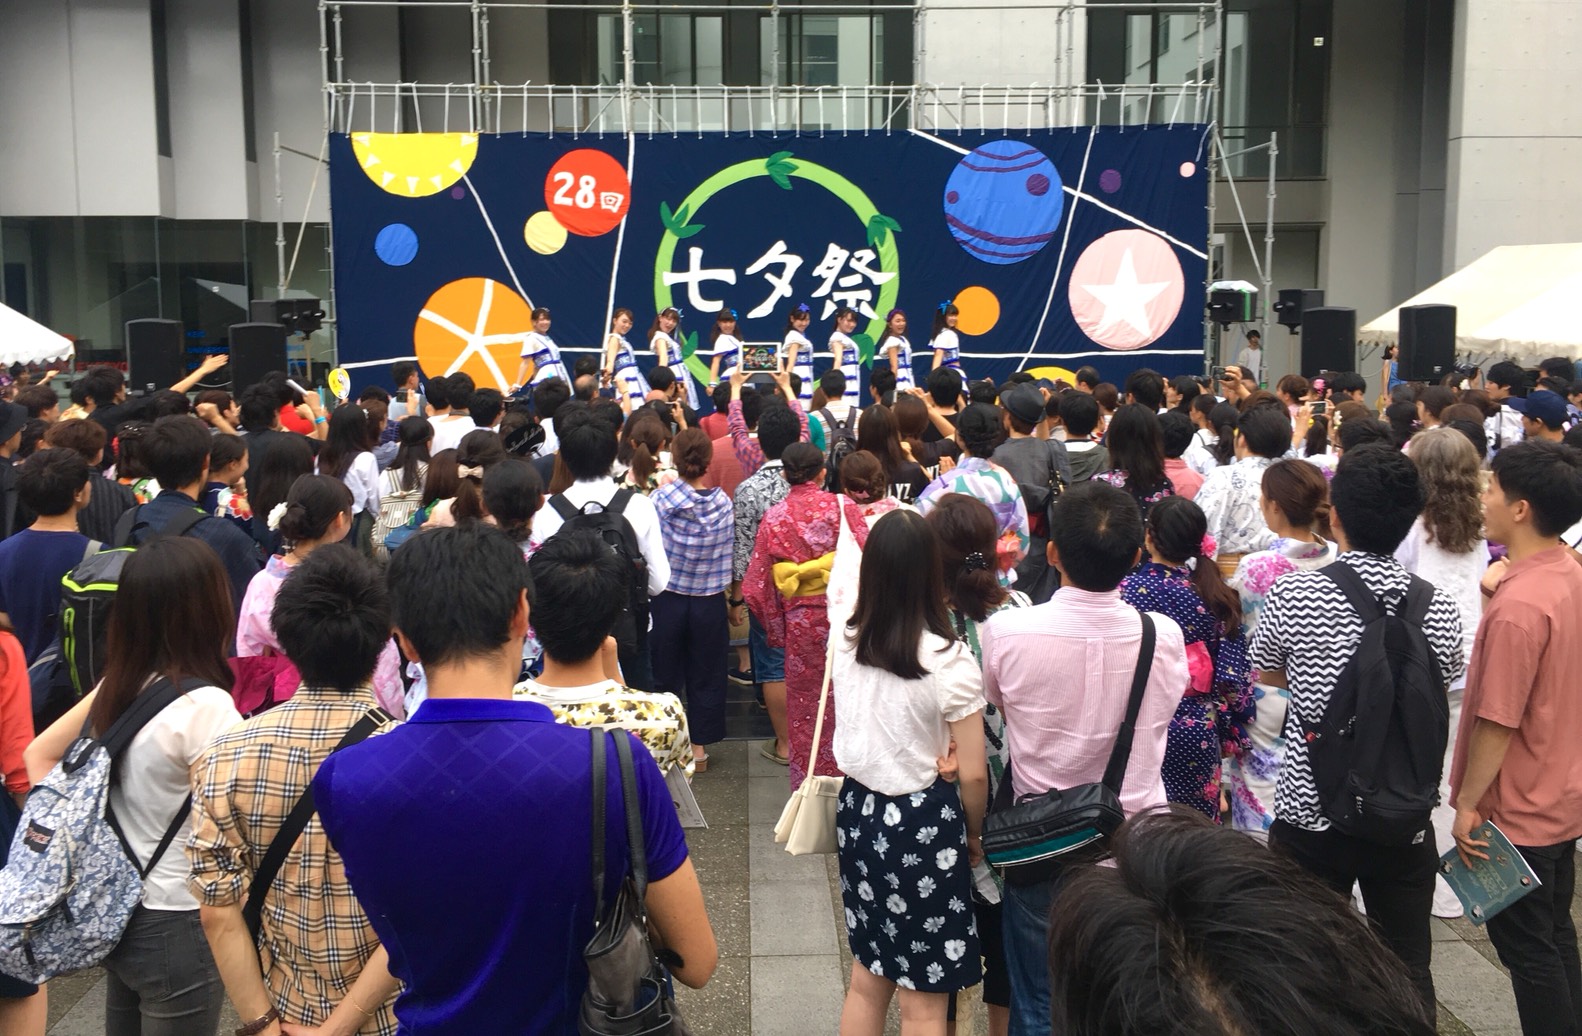 七夕祭ステージで精力的に活動するそれほほメンバーたち(写真:マネージャー・武田さん提供)